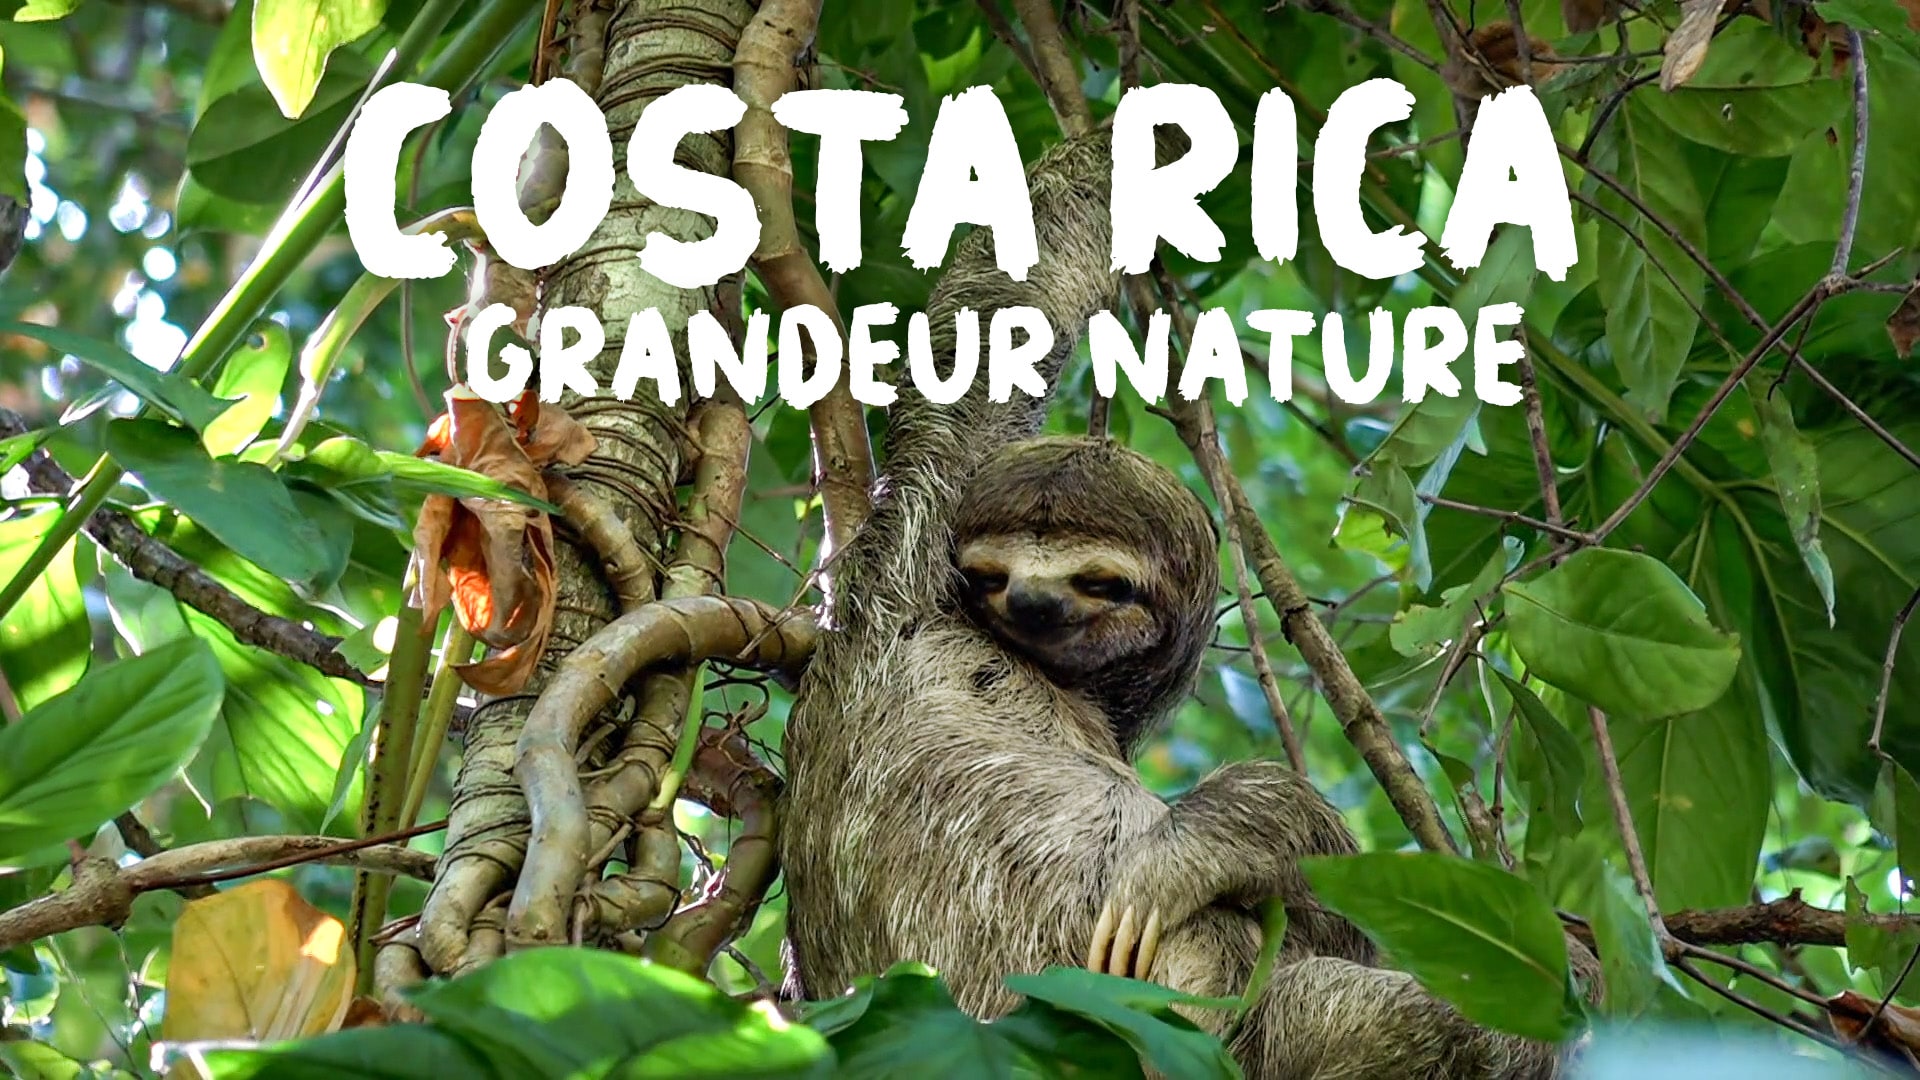 Costa Rica grandeur nature